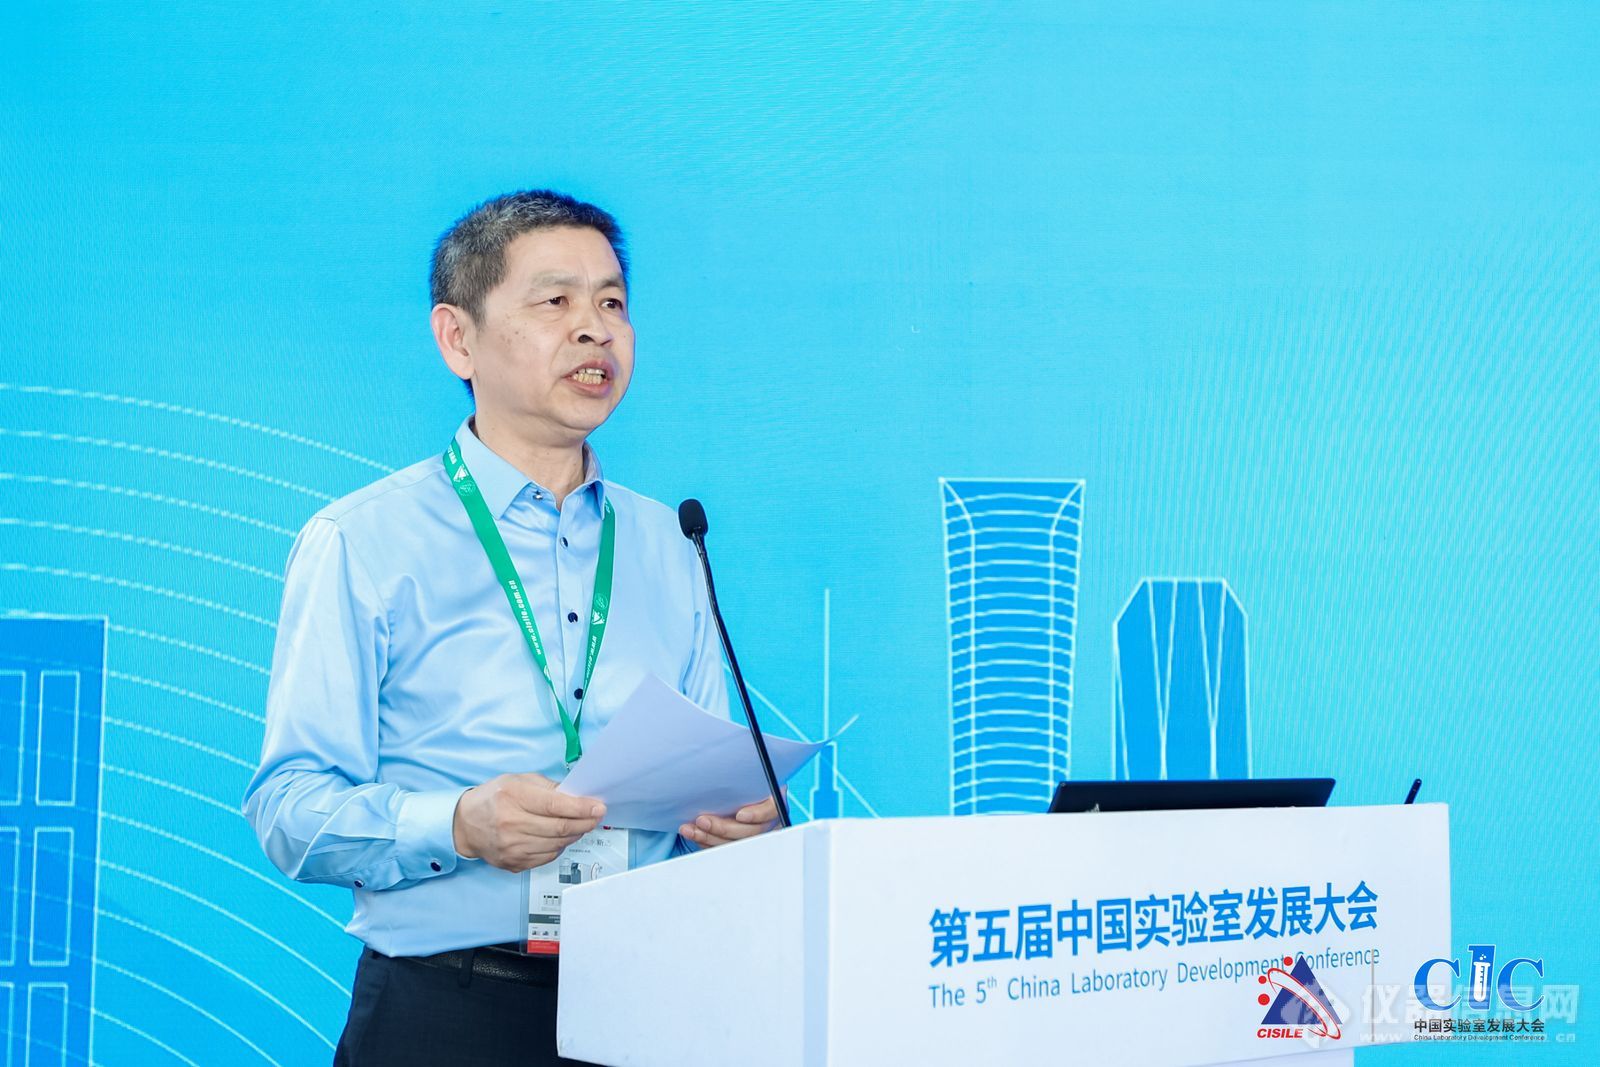 中国仪器仪表行业协会副秘书长郑朝松主持了颁奖仪式并介绍了奖项评审过程